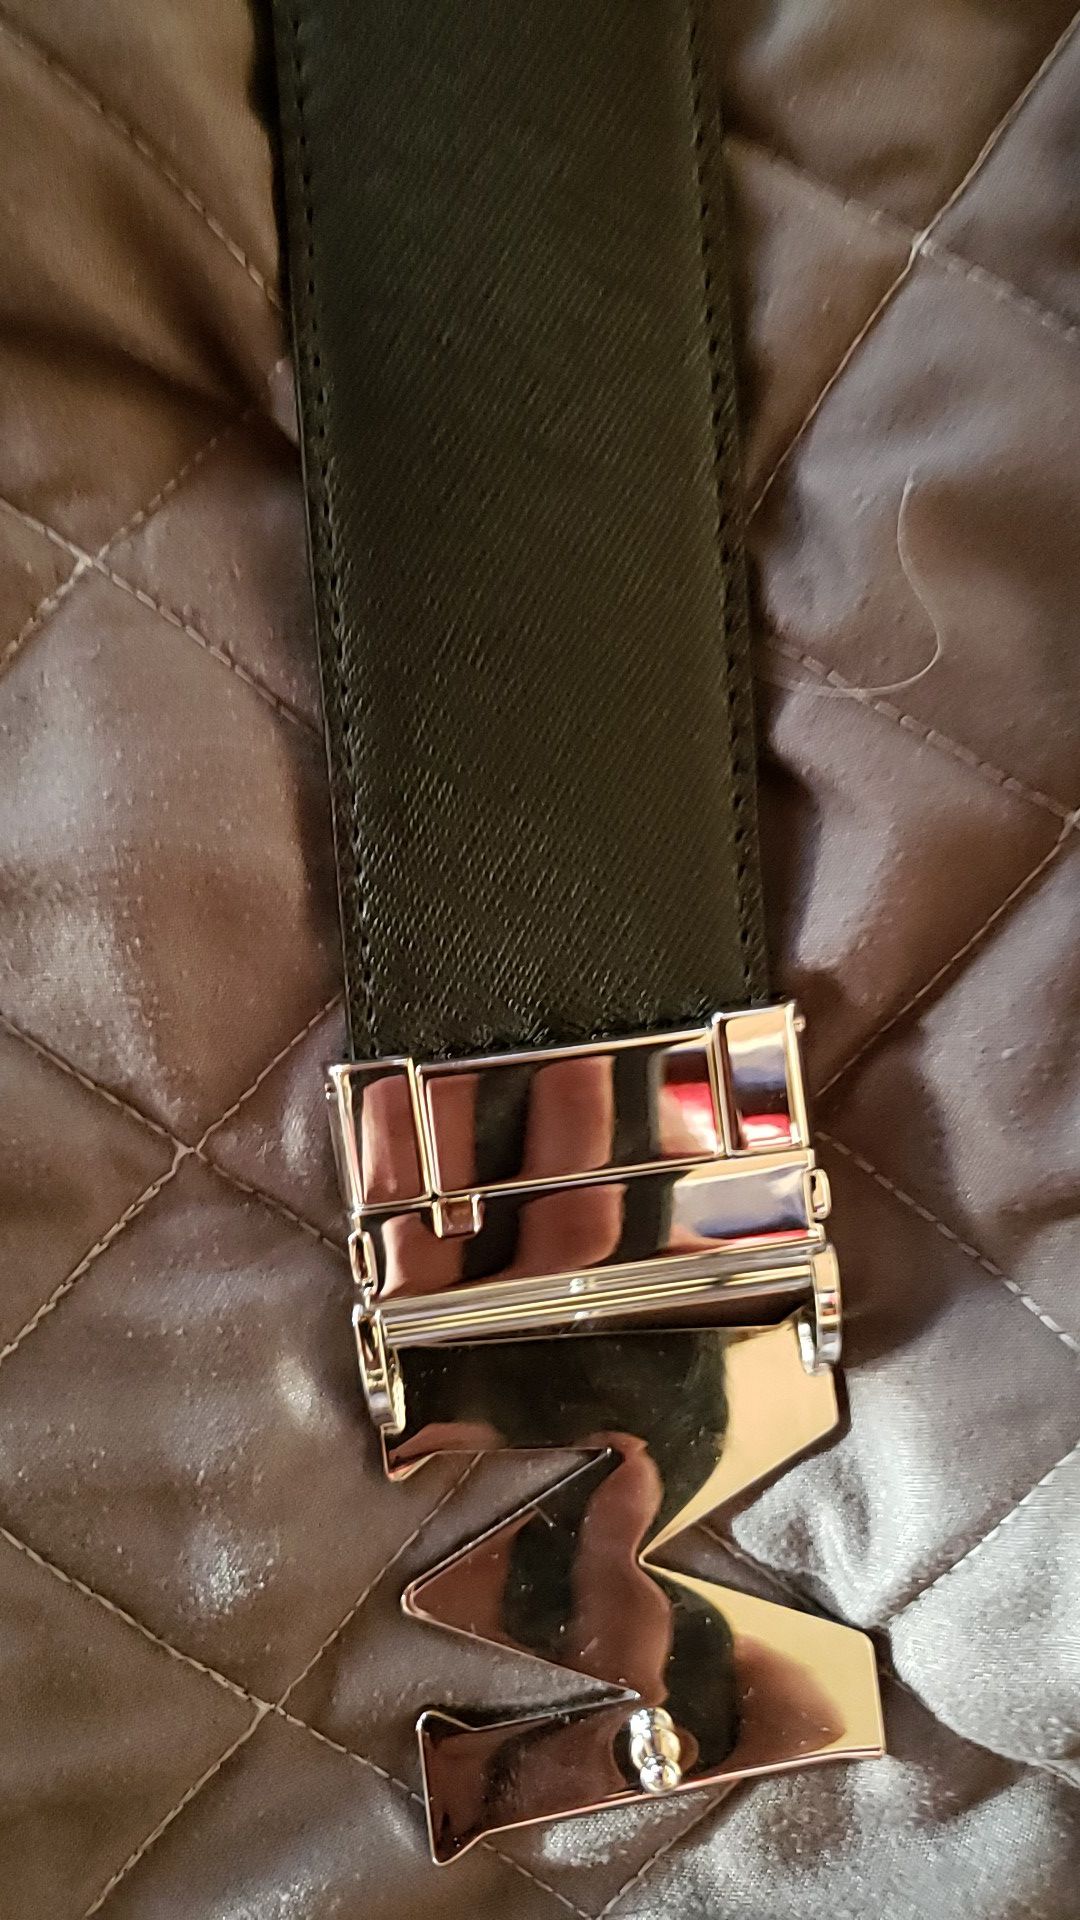 Designer Belt Size “100”cm “30”-“32” Waist for Sale in Las Vegas, NV -  OfferUp